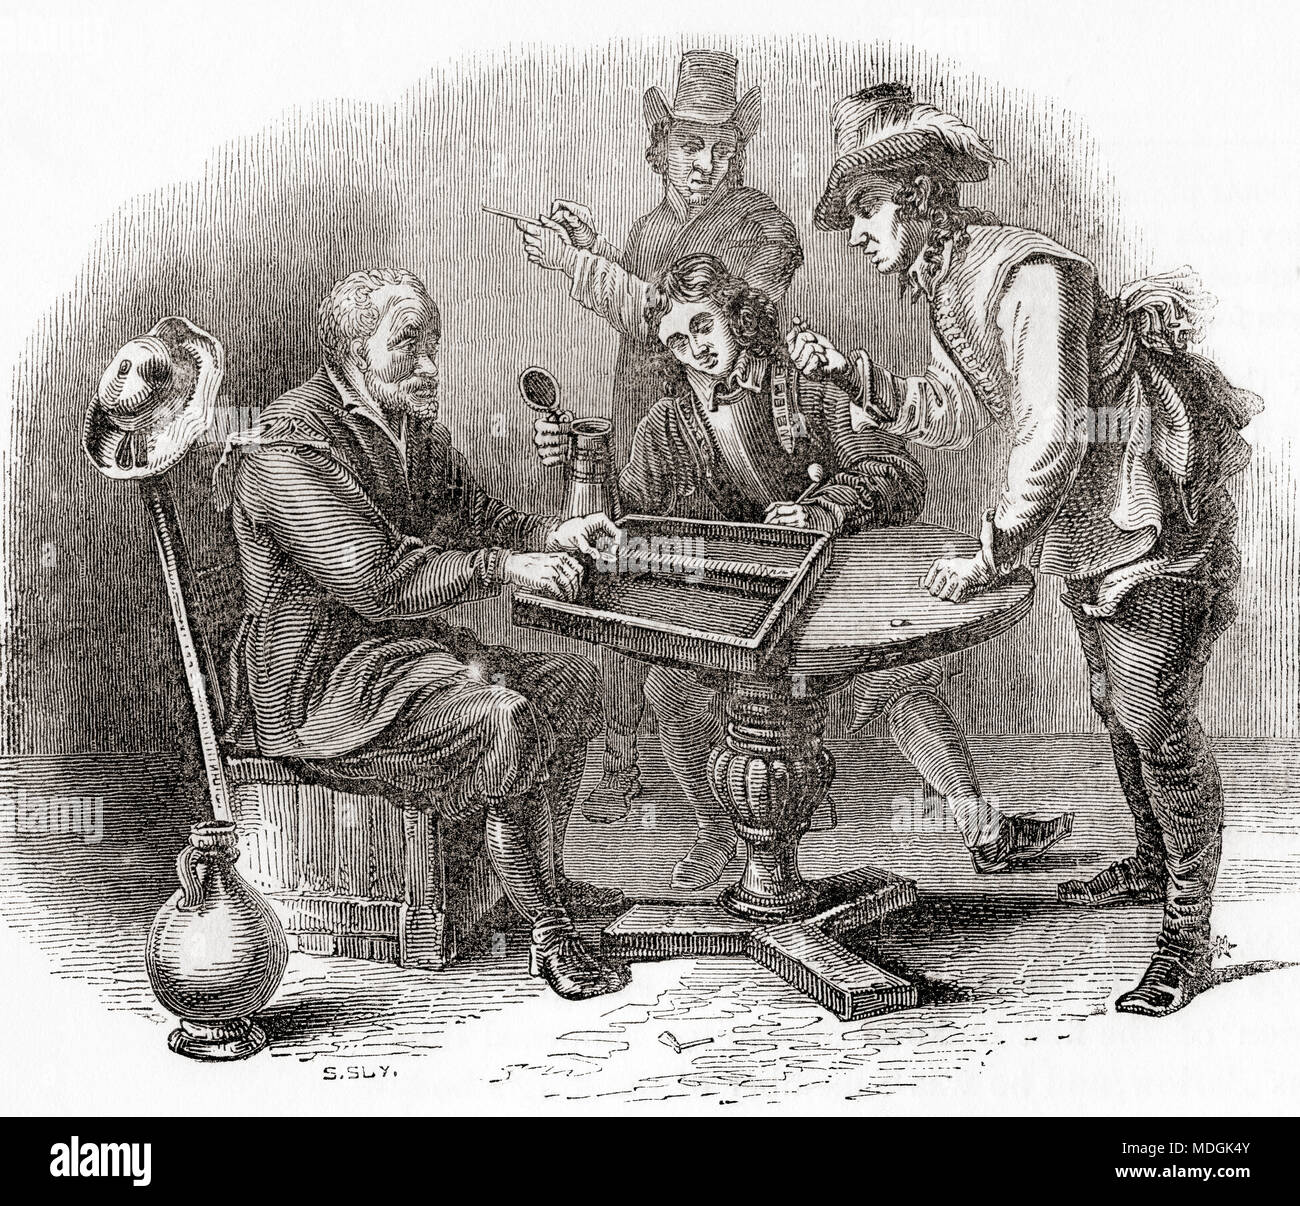 Gli uomini che giocano una partita di Tric Trac, aka tabelle, un inizio di forma francese di backgammon. Da Vecchia Inghilterra: un museo pittorico, pubblicato nel 1847. Foto Stock